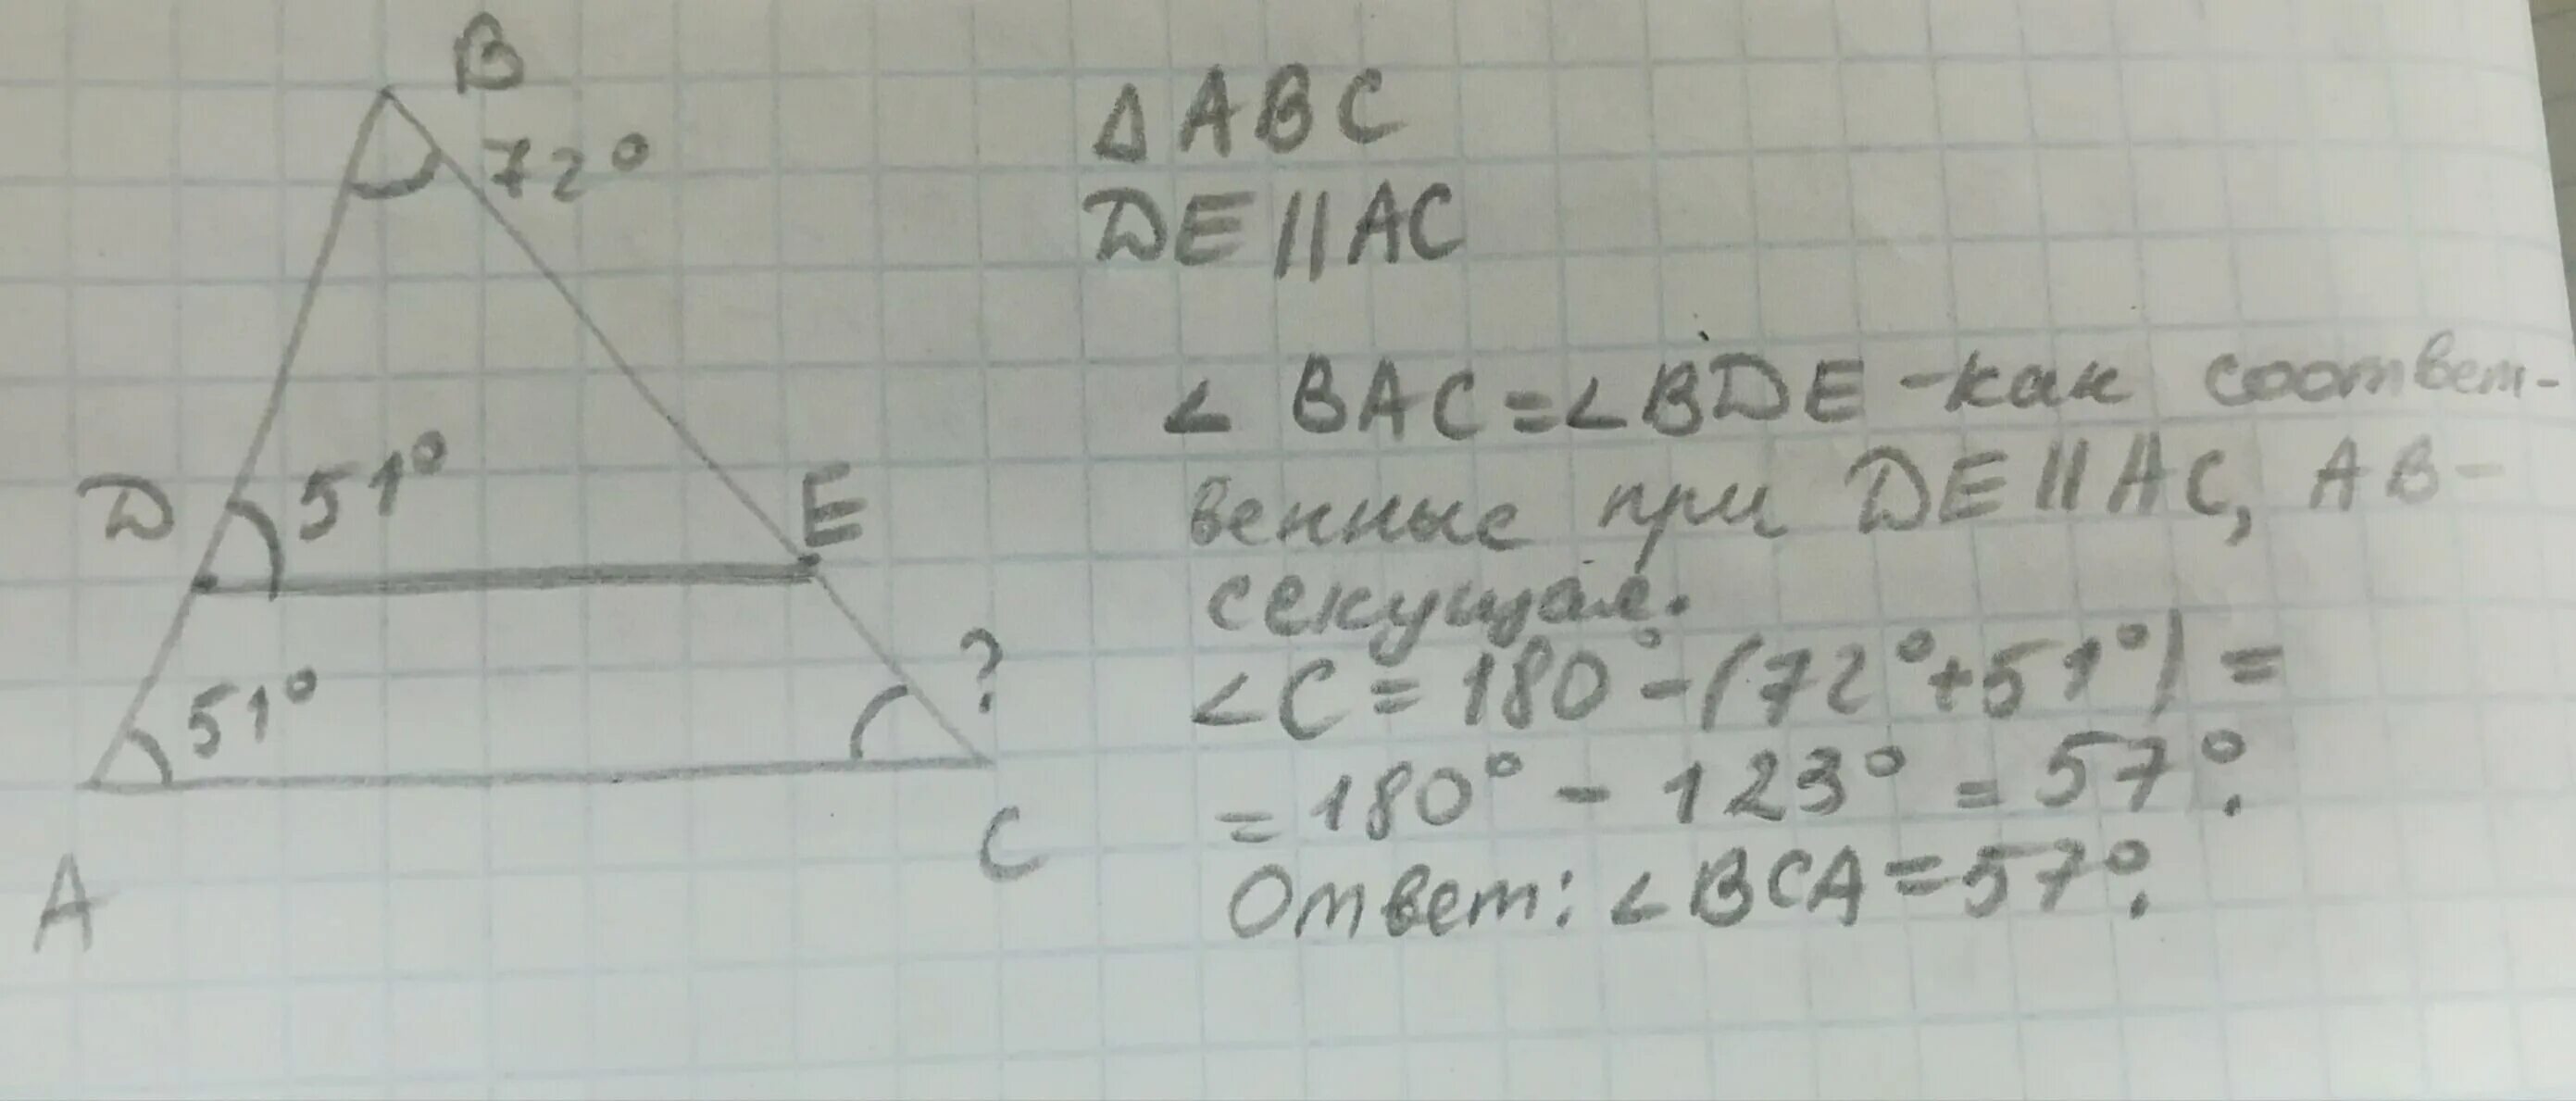 44 20 6. В треугольнике ABC провели de параллельно AC известно что d. Нарисуй треугольник ABC И проведи de AC известно что d ab e BC. Нарисуй треугольник ABC И проведи de параллельную AC. Нарисуйте треугольник ABC И проведите de AC известно что д параллельно.